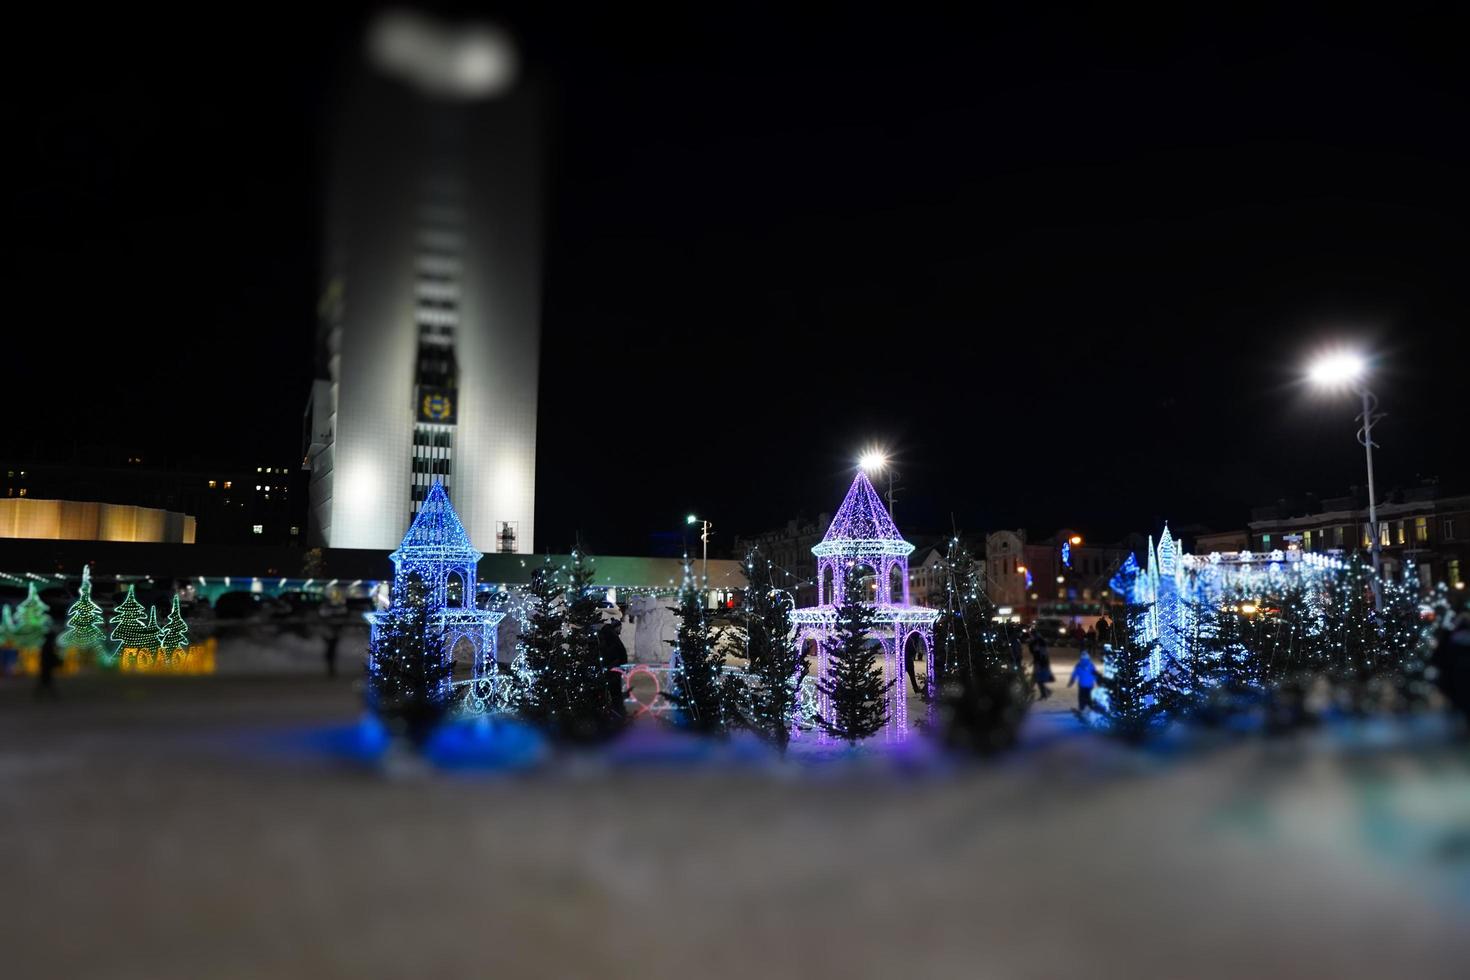 Night landscape of the festive city photo